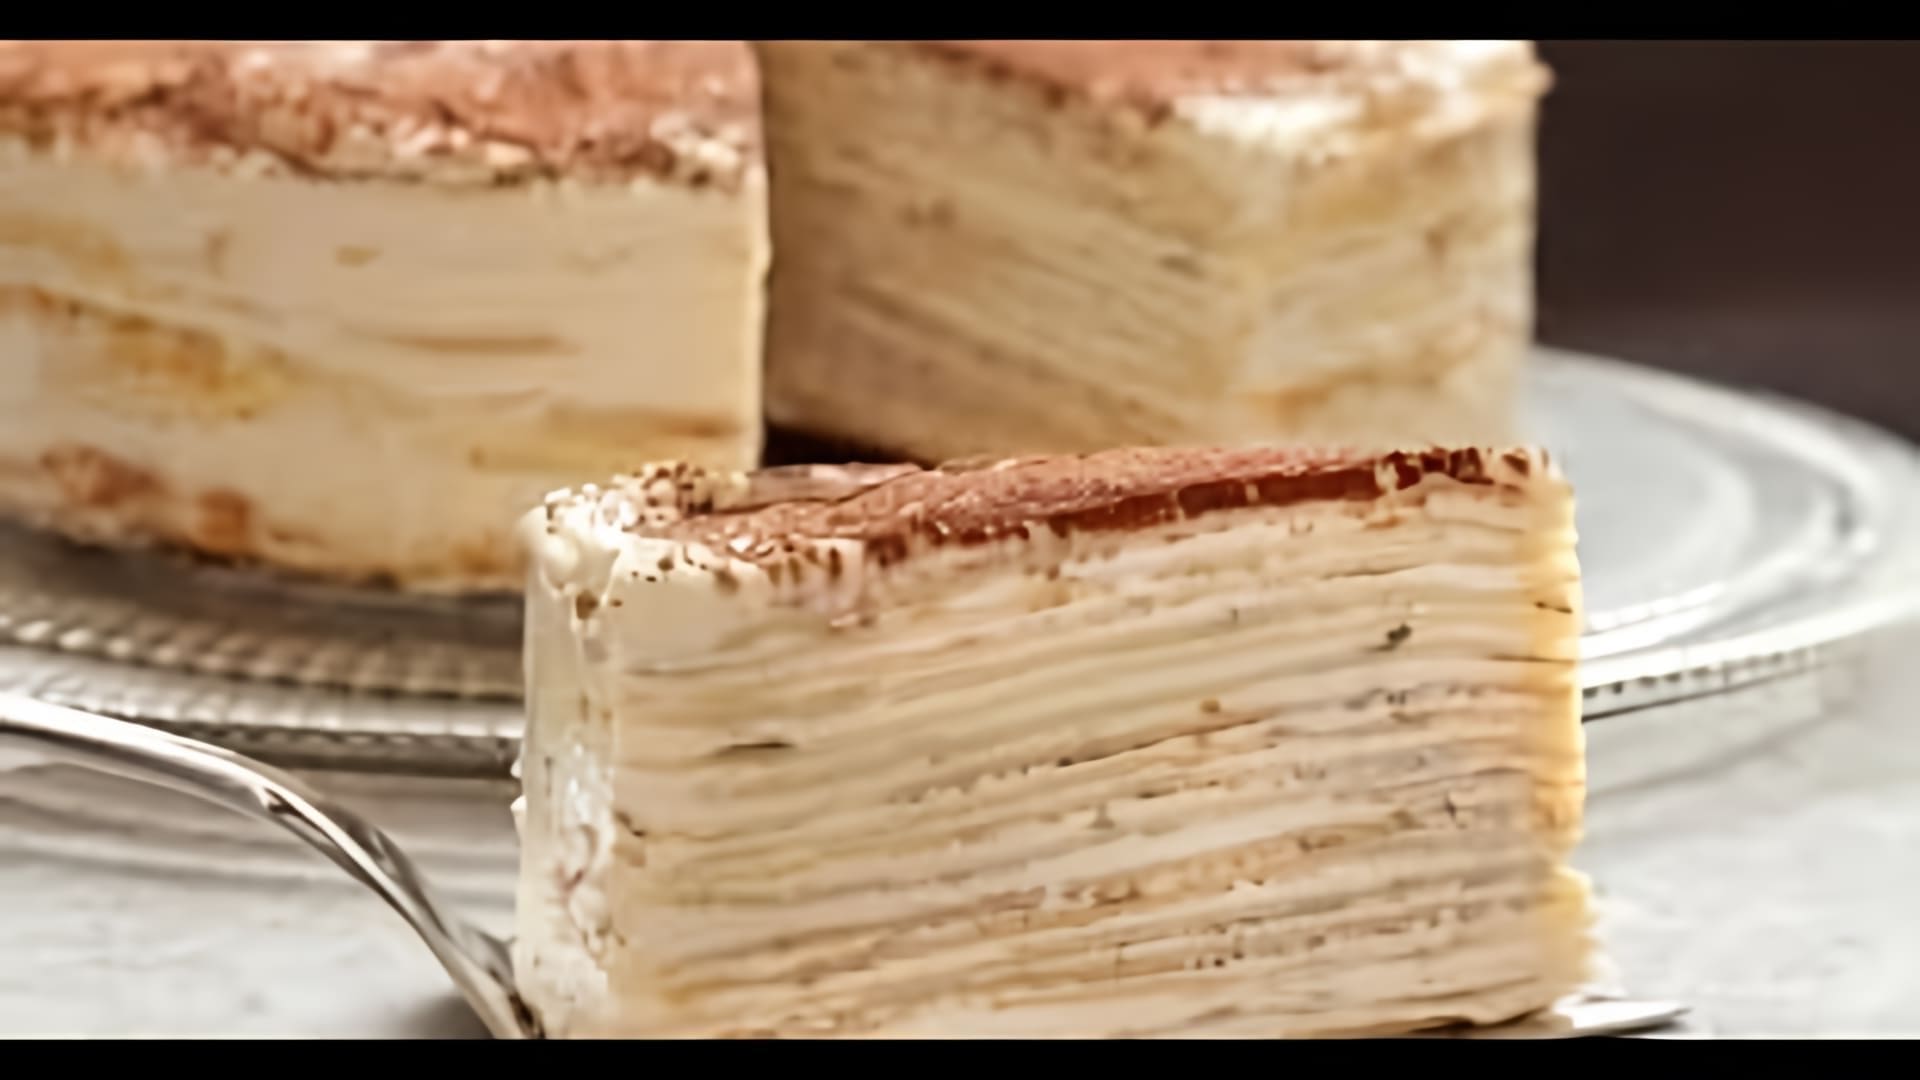 В этом видео демонстрируется процесс приготовления торта "Крепвиль"